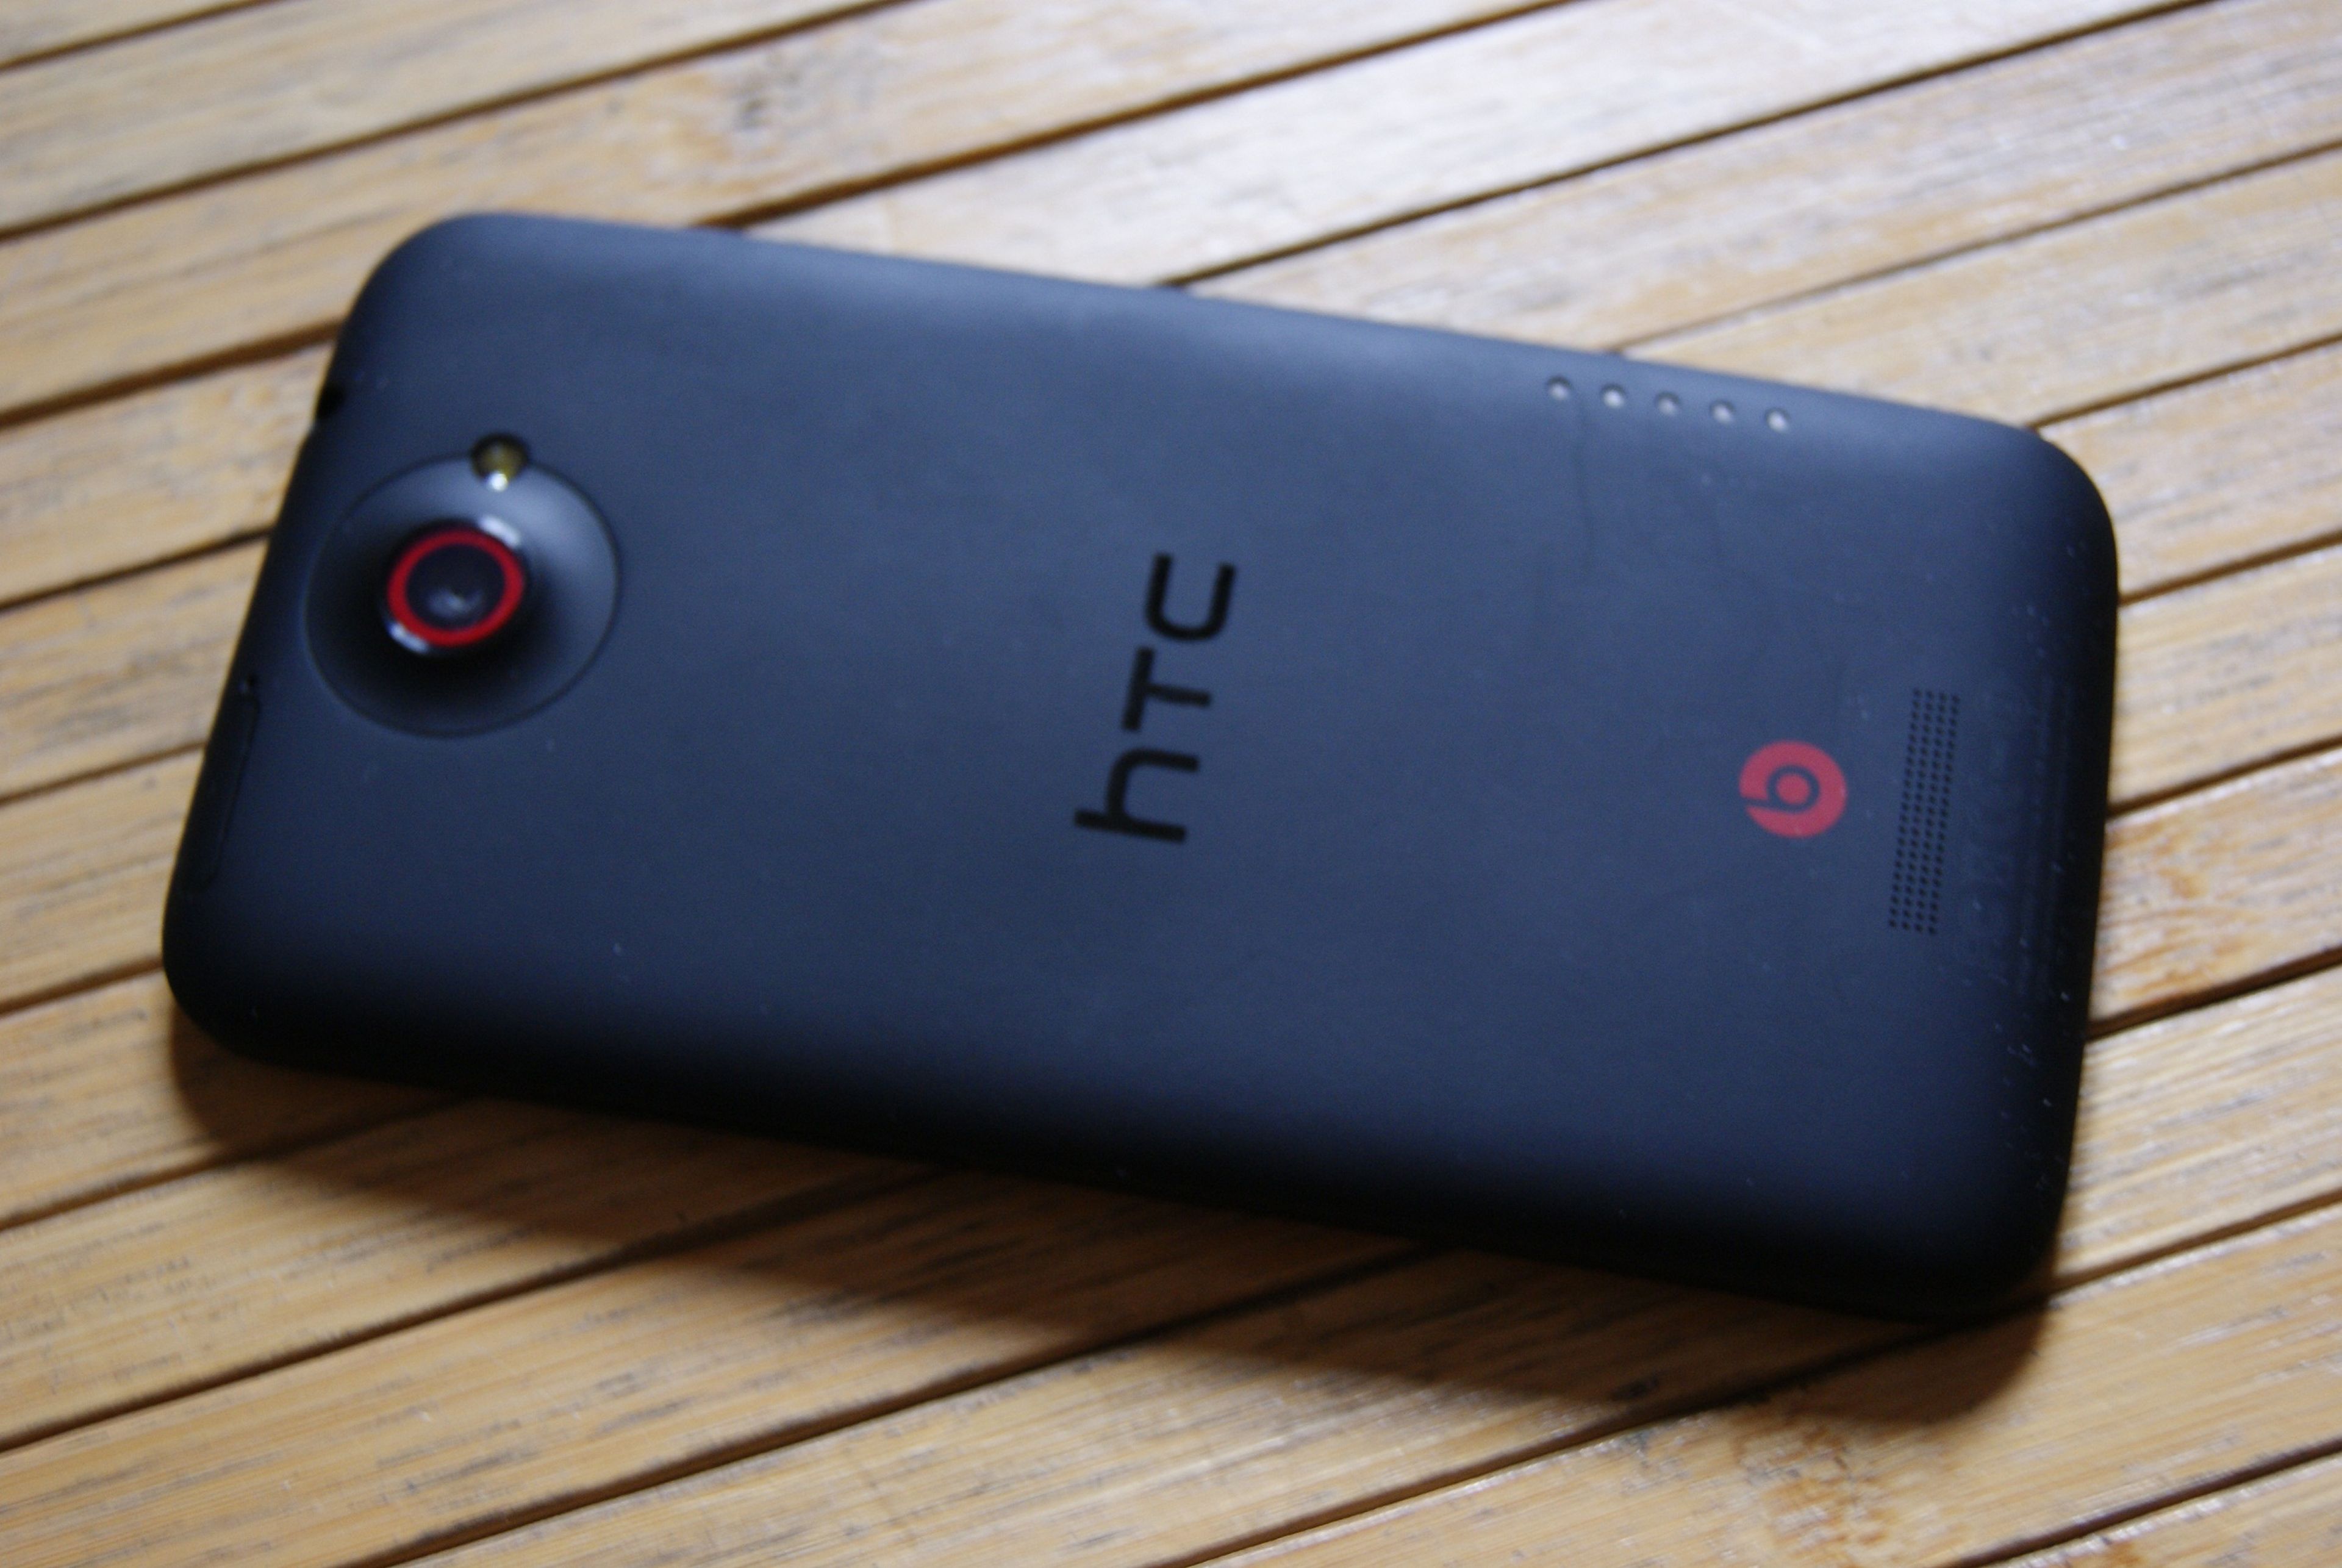 HTC One X+ un 'smartphone' para jugar